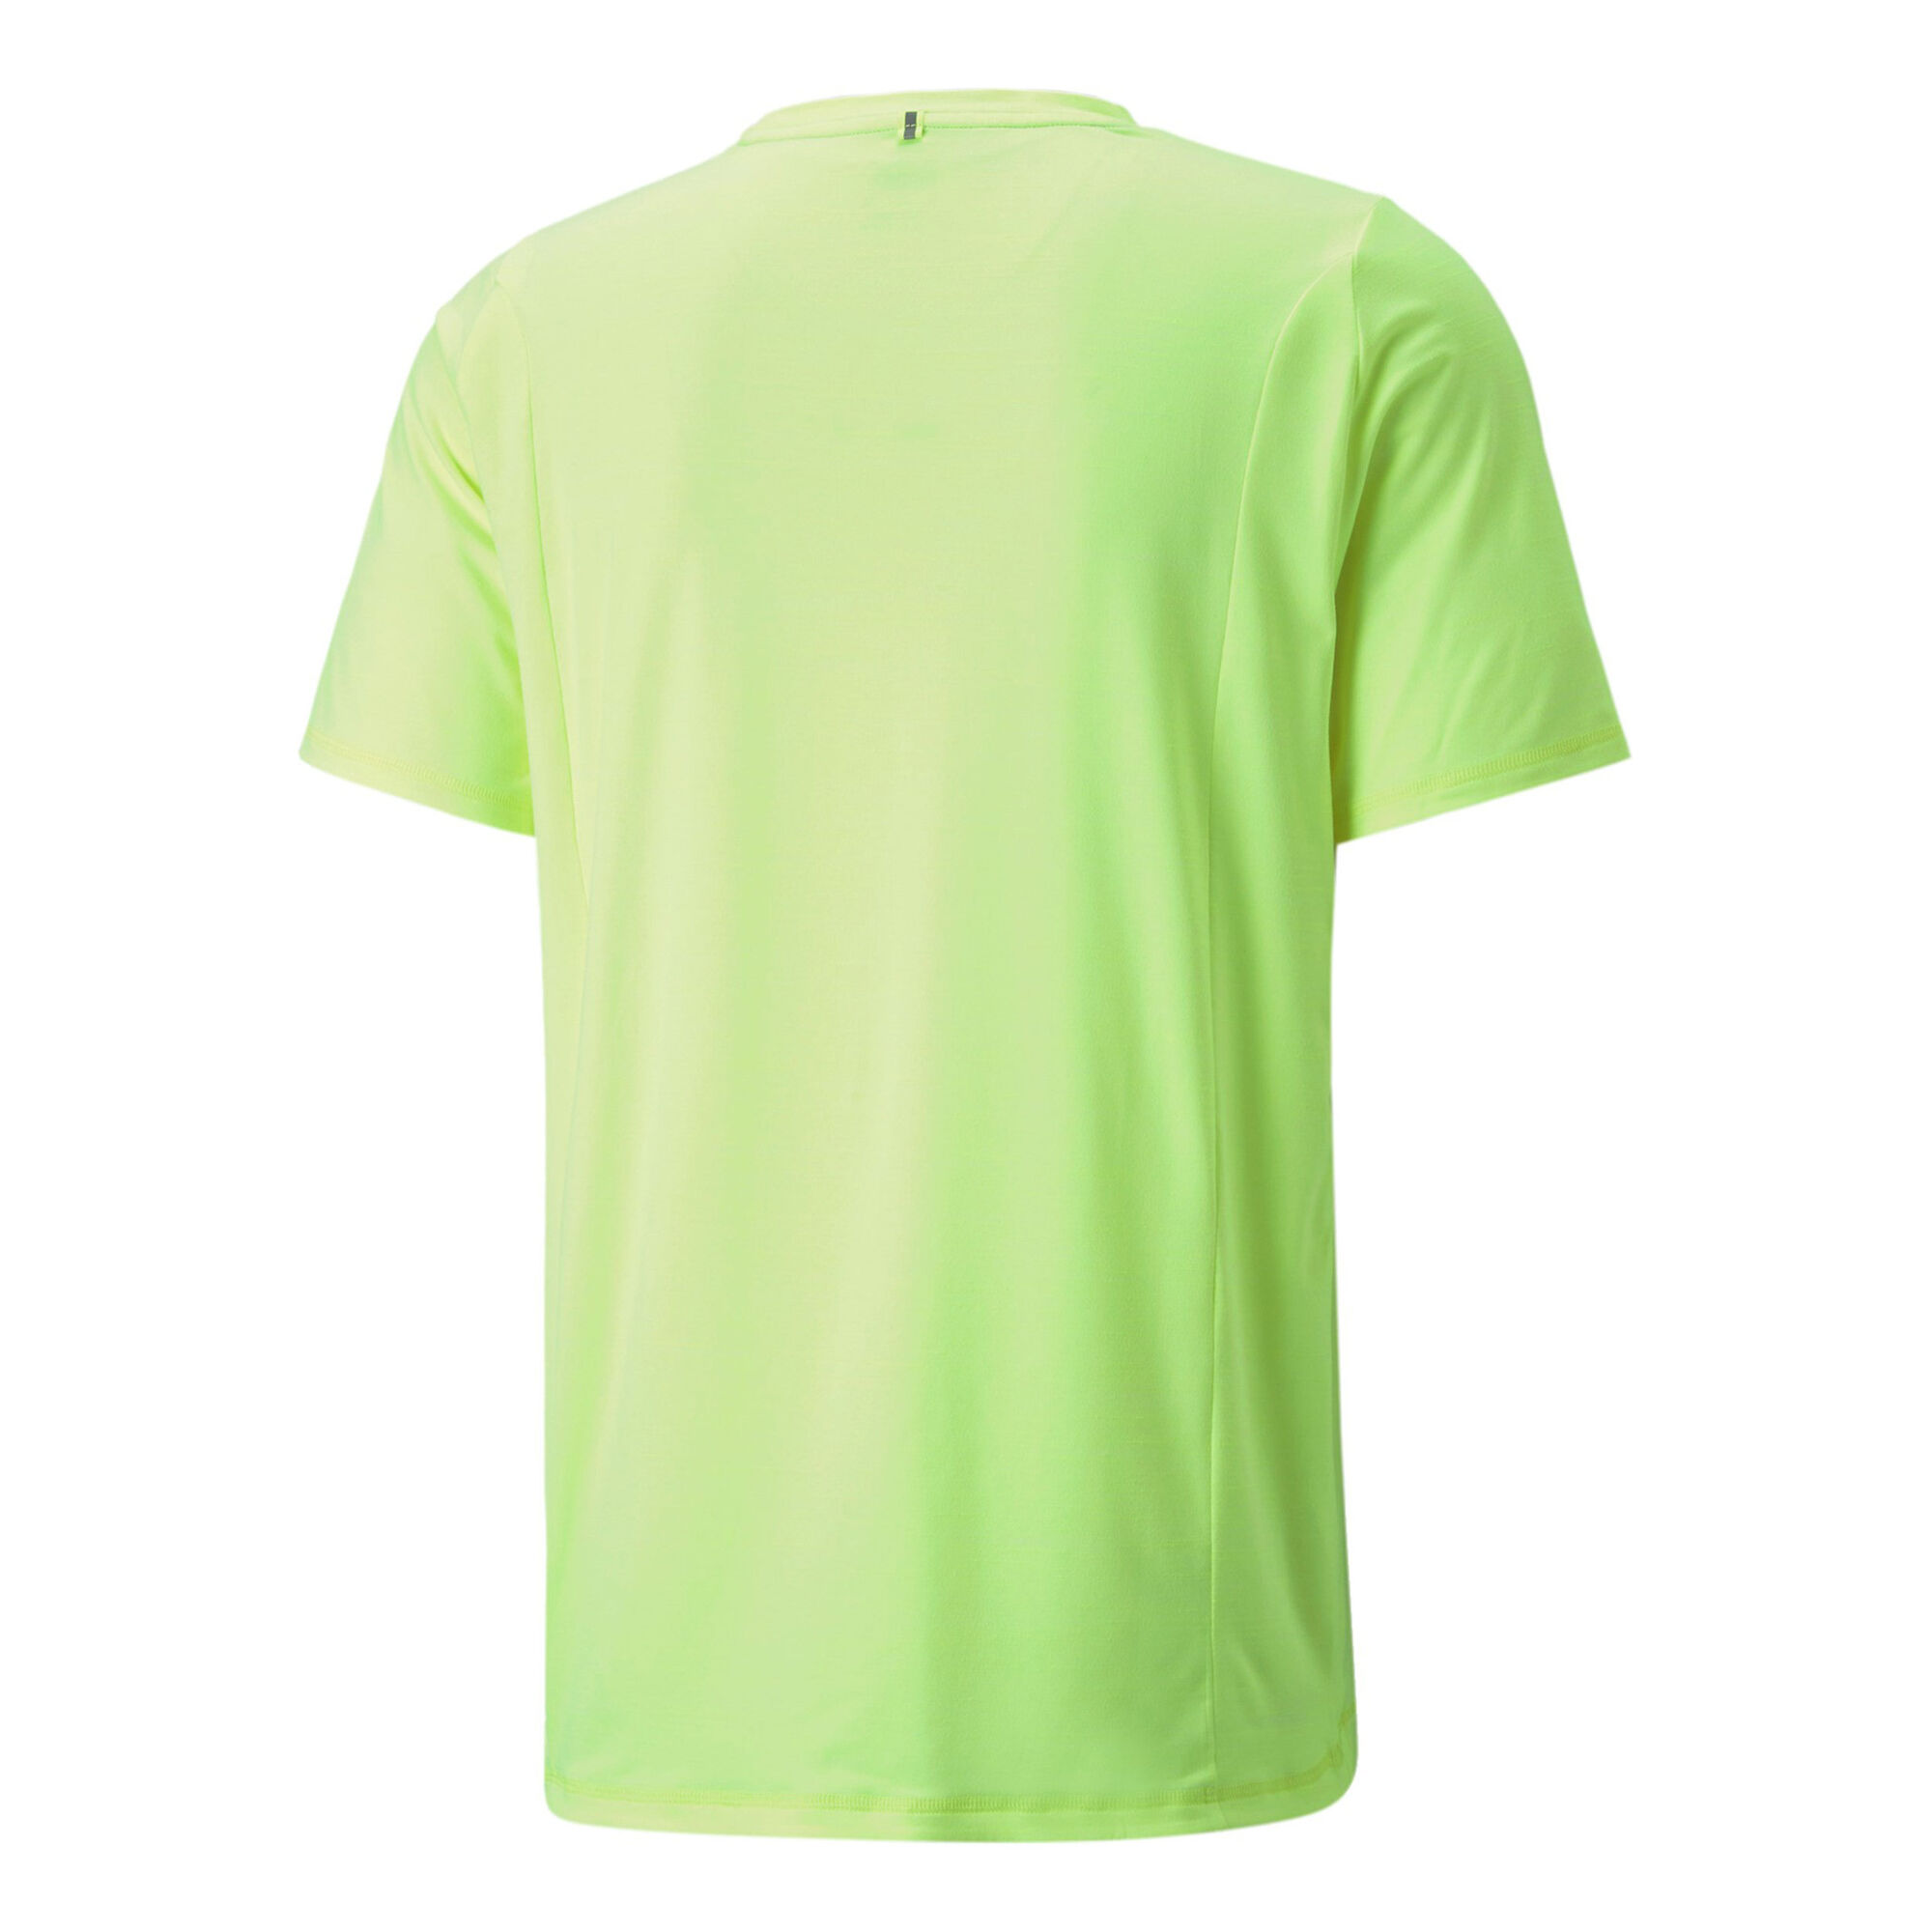 Cloudspun Buy Point COM online Men Running T-Shirt Neon Shirts | Puma Green Running